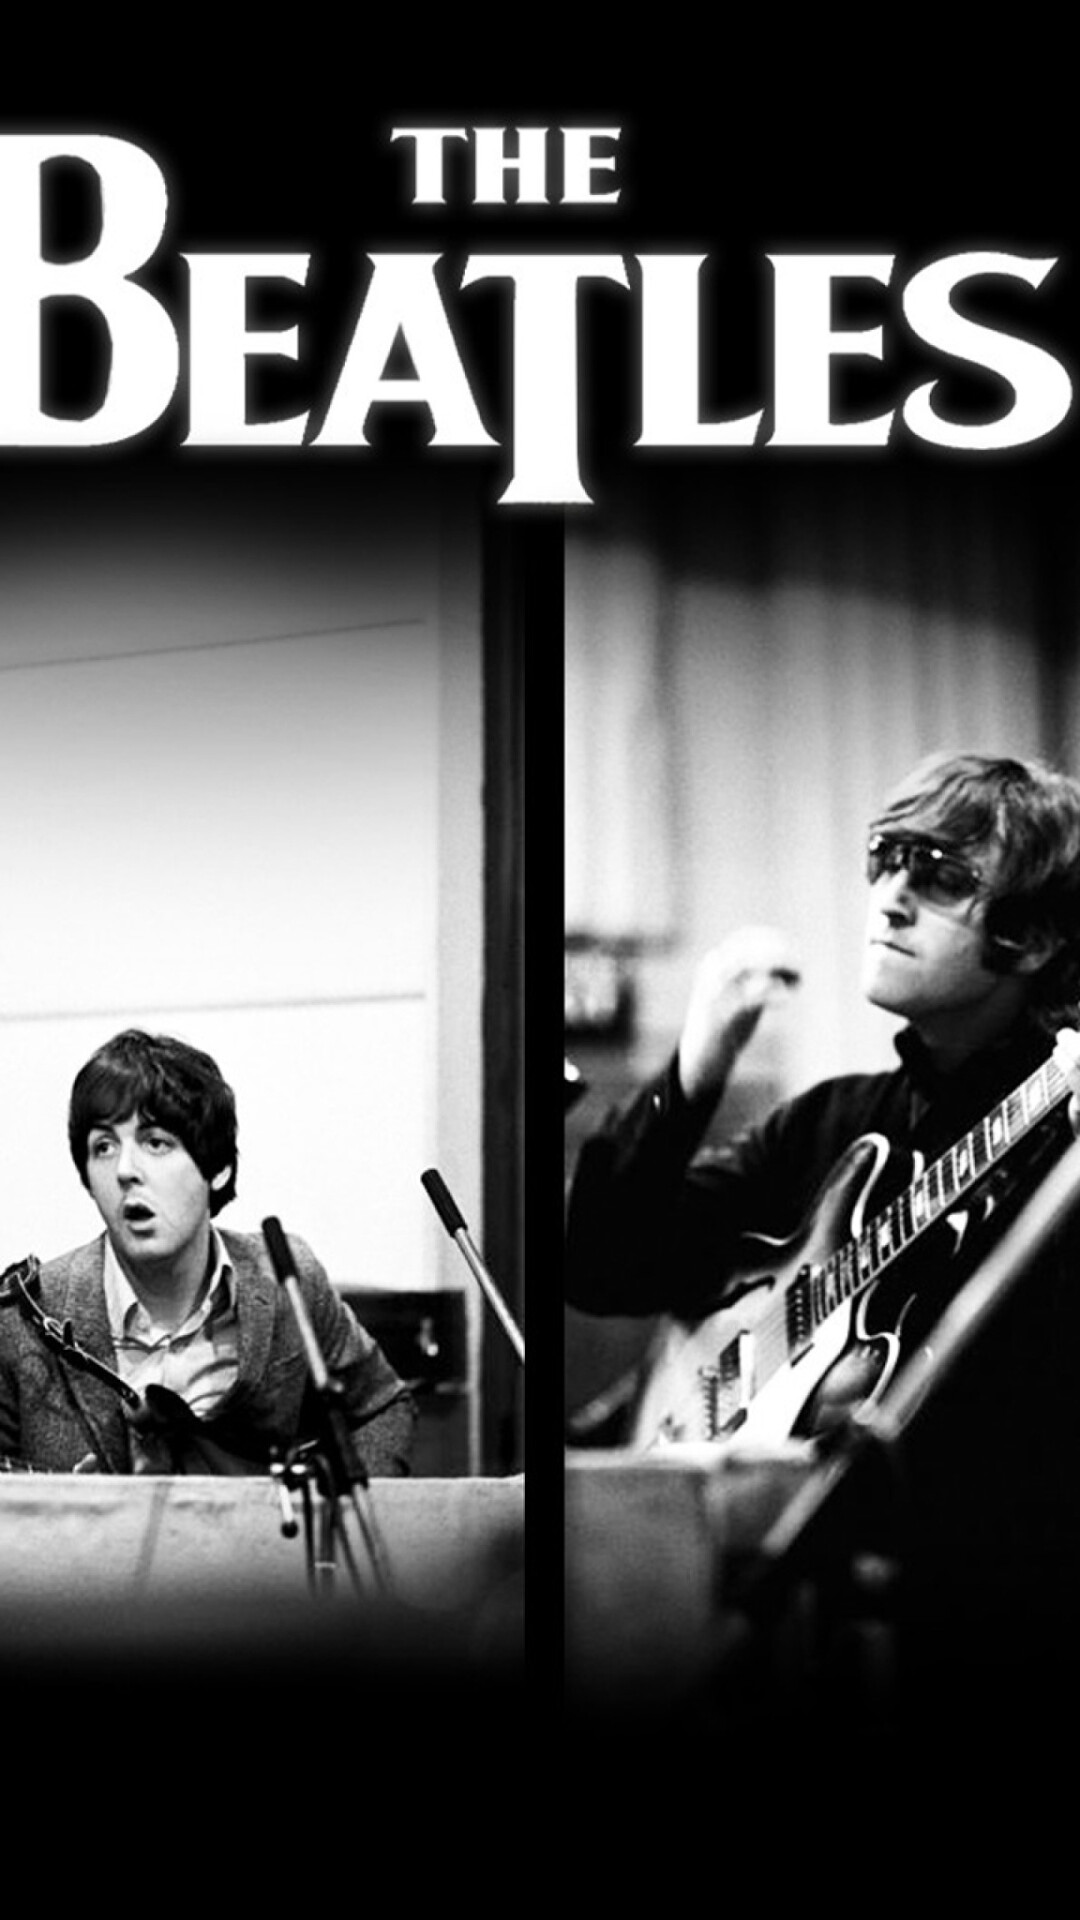 The Beatles: John Lennon and Paul McCartney, Musicians, Studio. 1080x1920 Full HD Wallpaper.